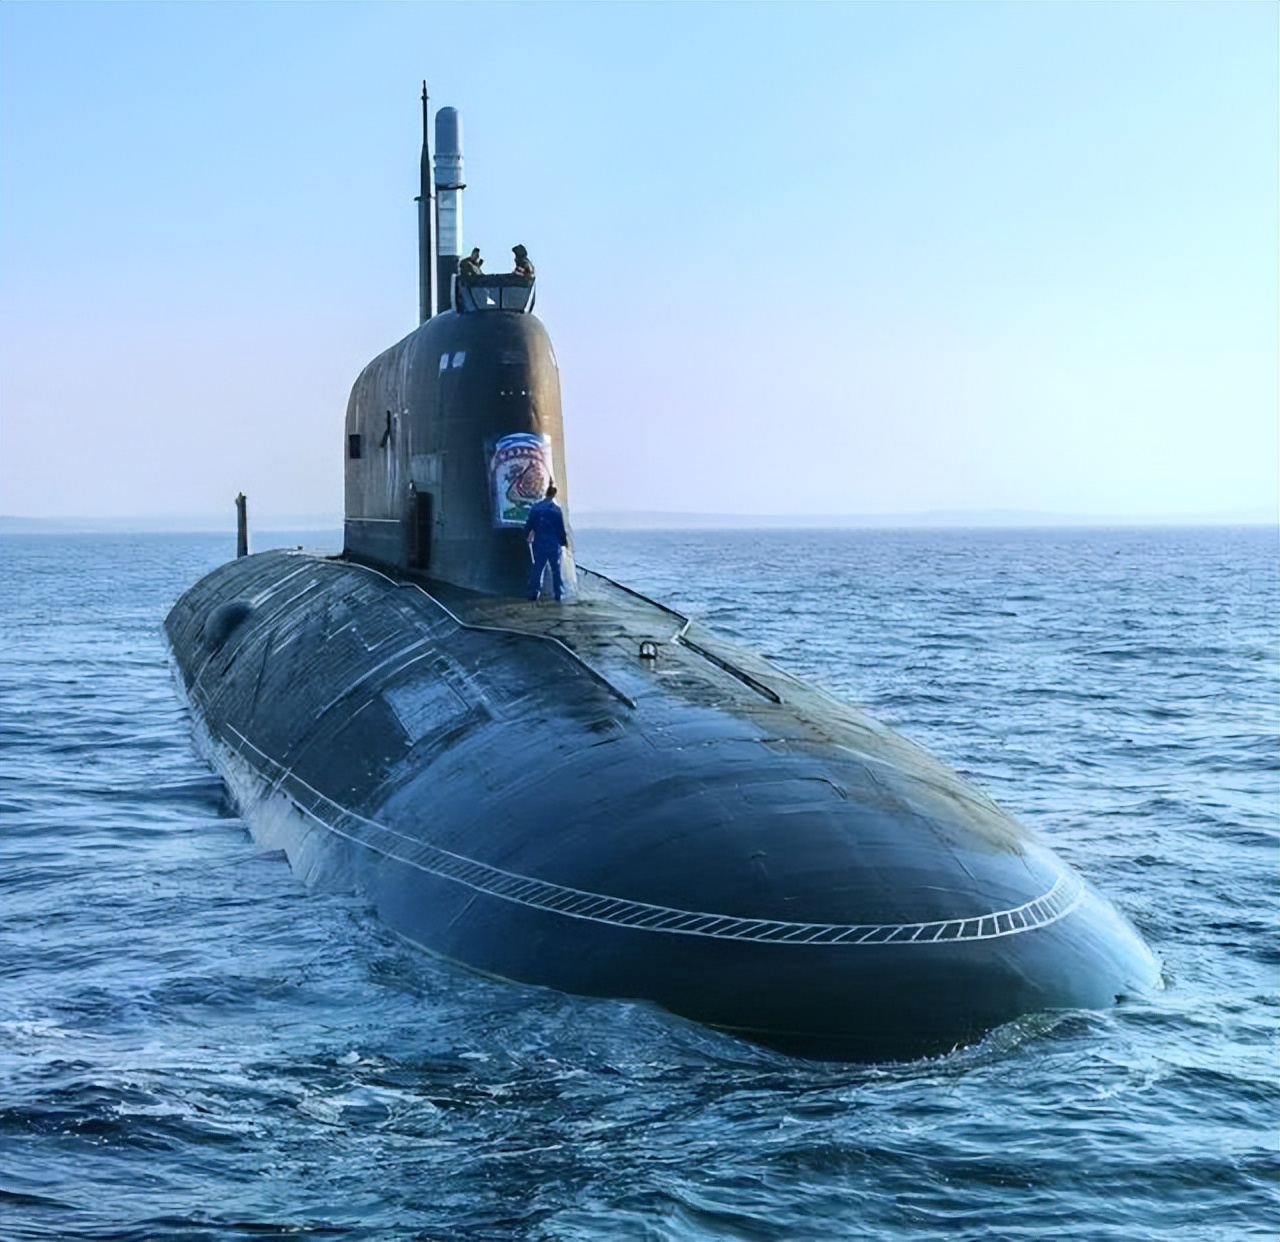 俄潜艇携带核武器出航,并且据悉还是战术核武器,这就更加引起了西方